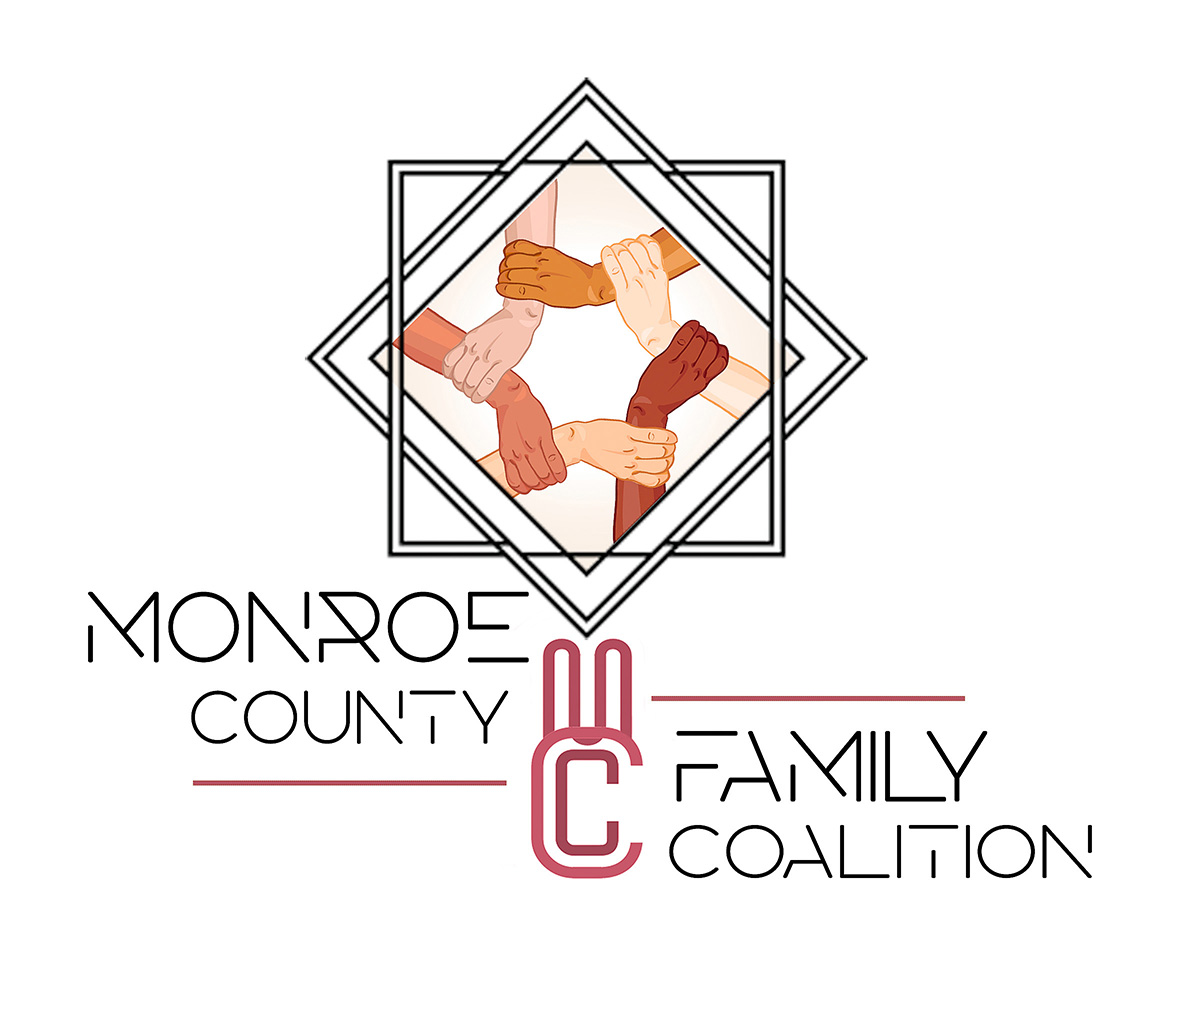 Monroe County Family Coalition